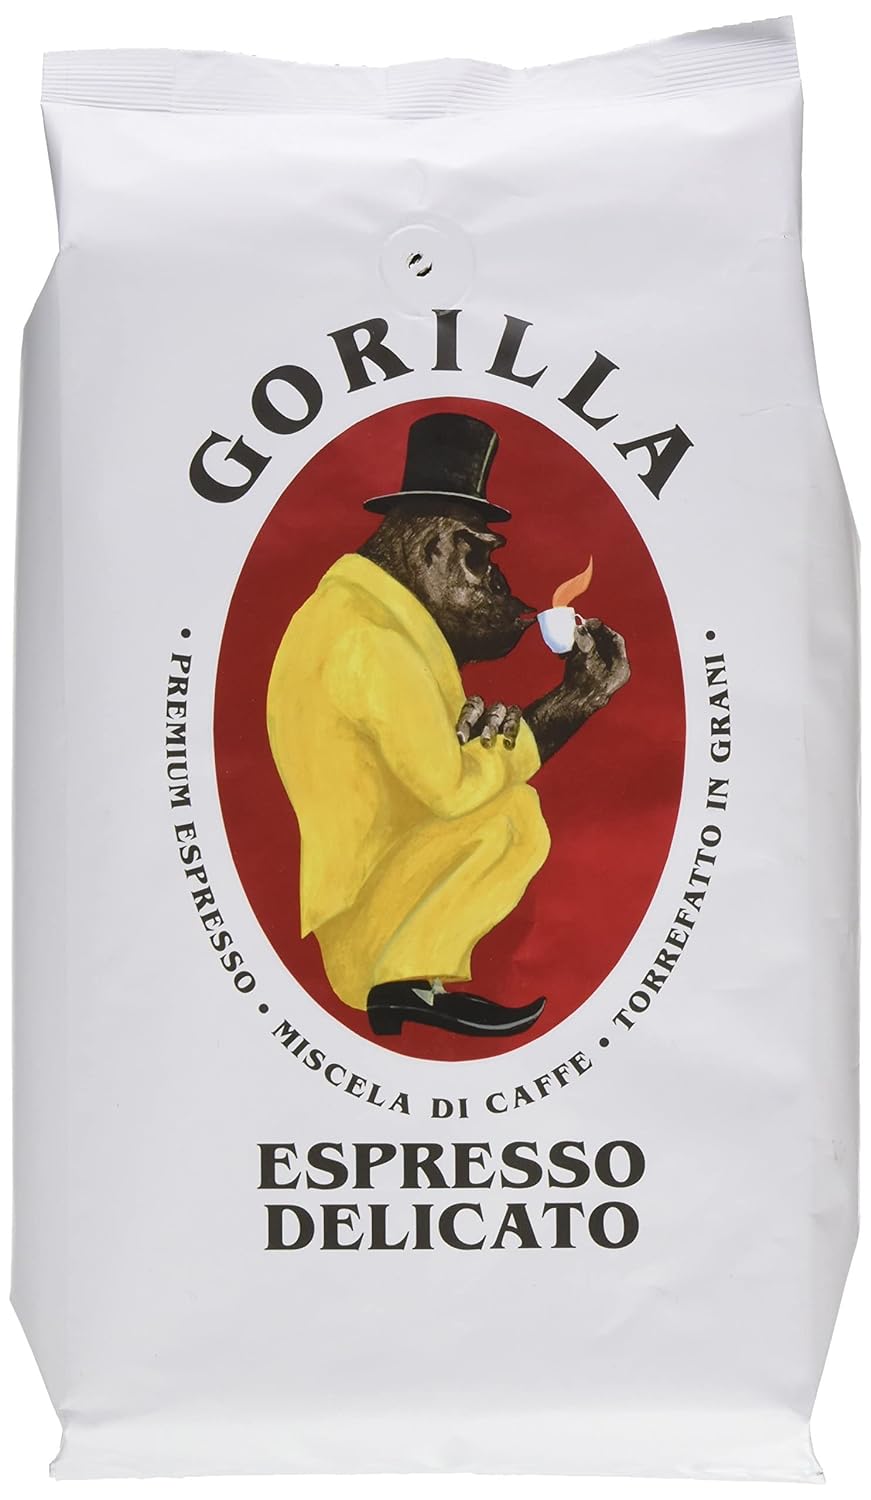 Joerges Gorilla Espresso Delicato, 1 kg, white